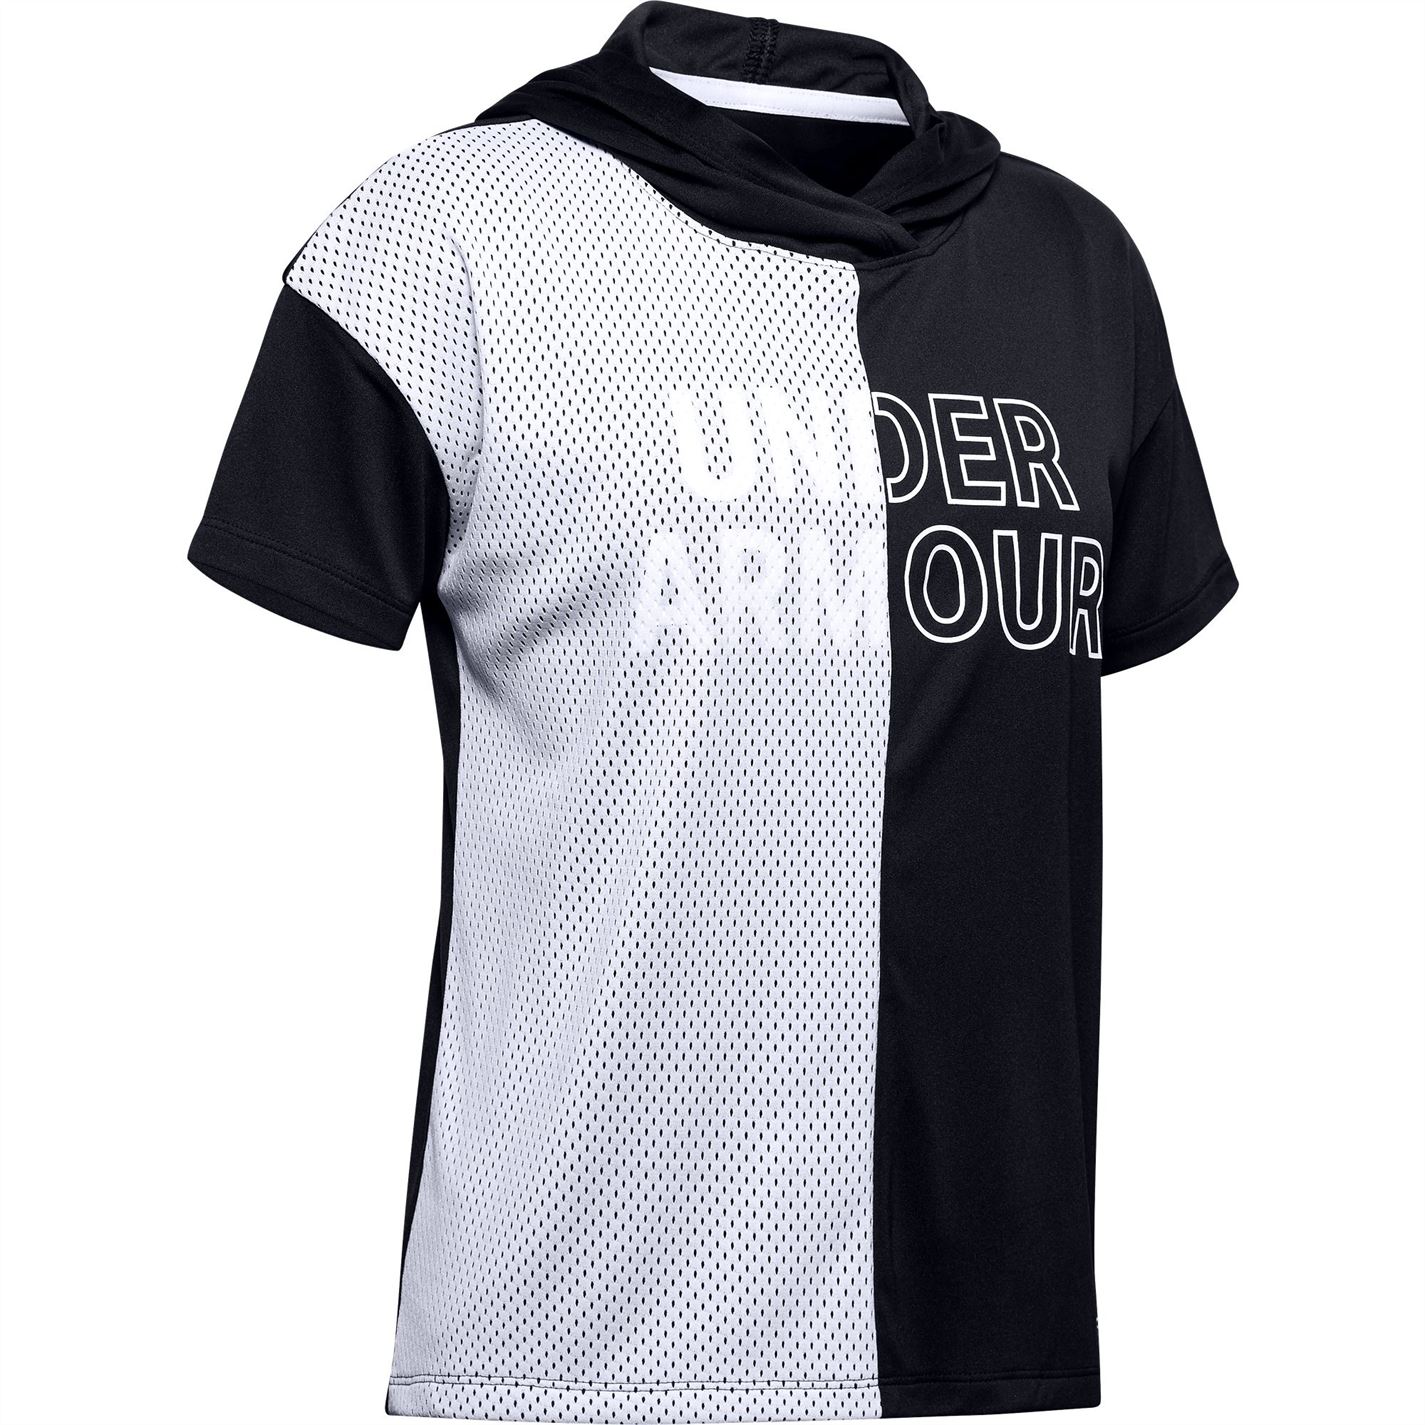 dětské tričko UNDER ARMOUR - BLACK - 140 9-10 let